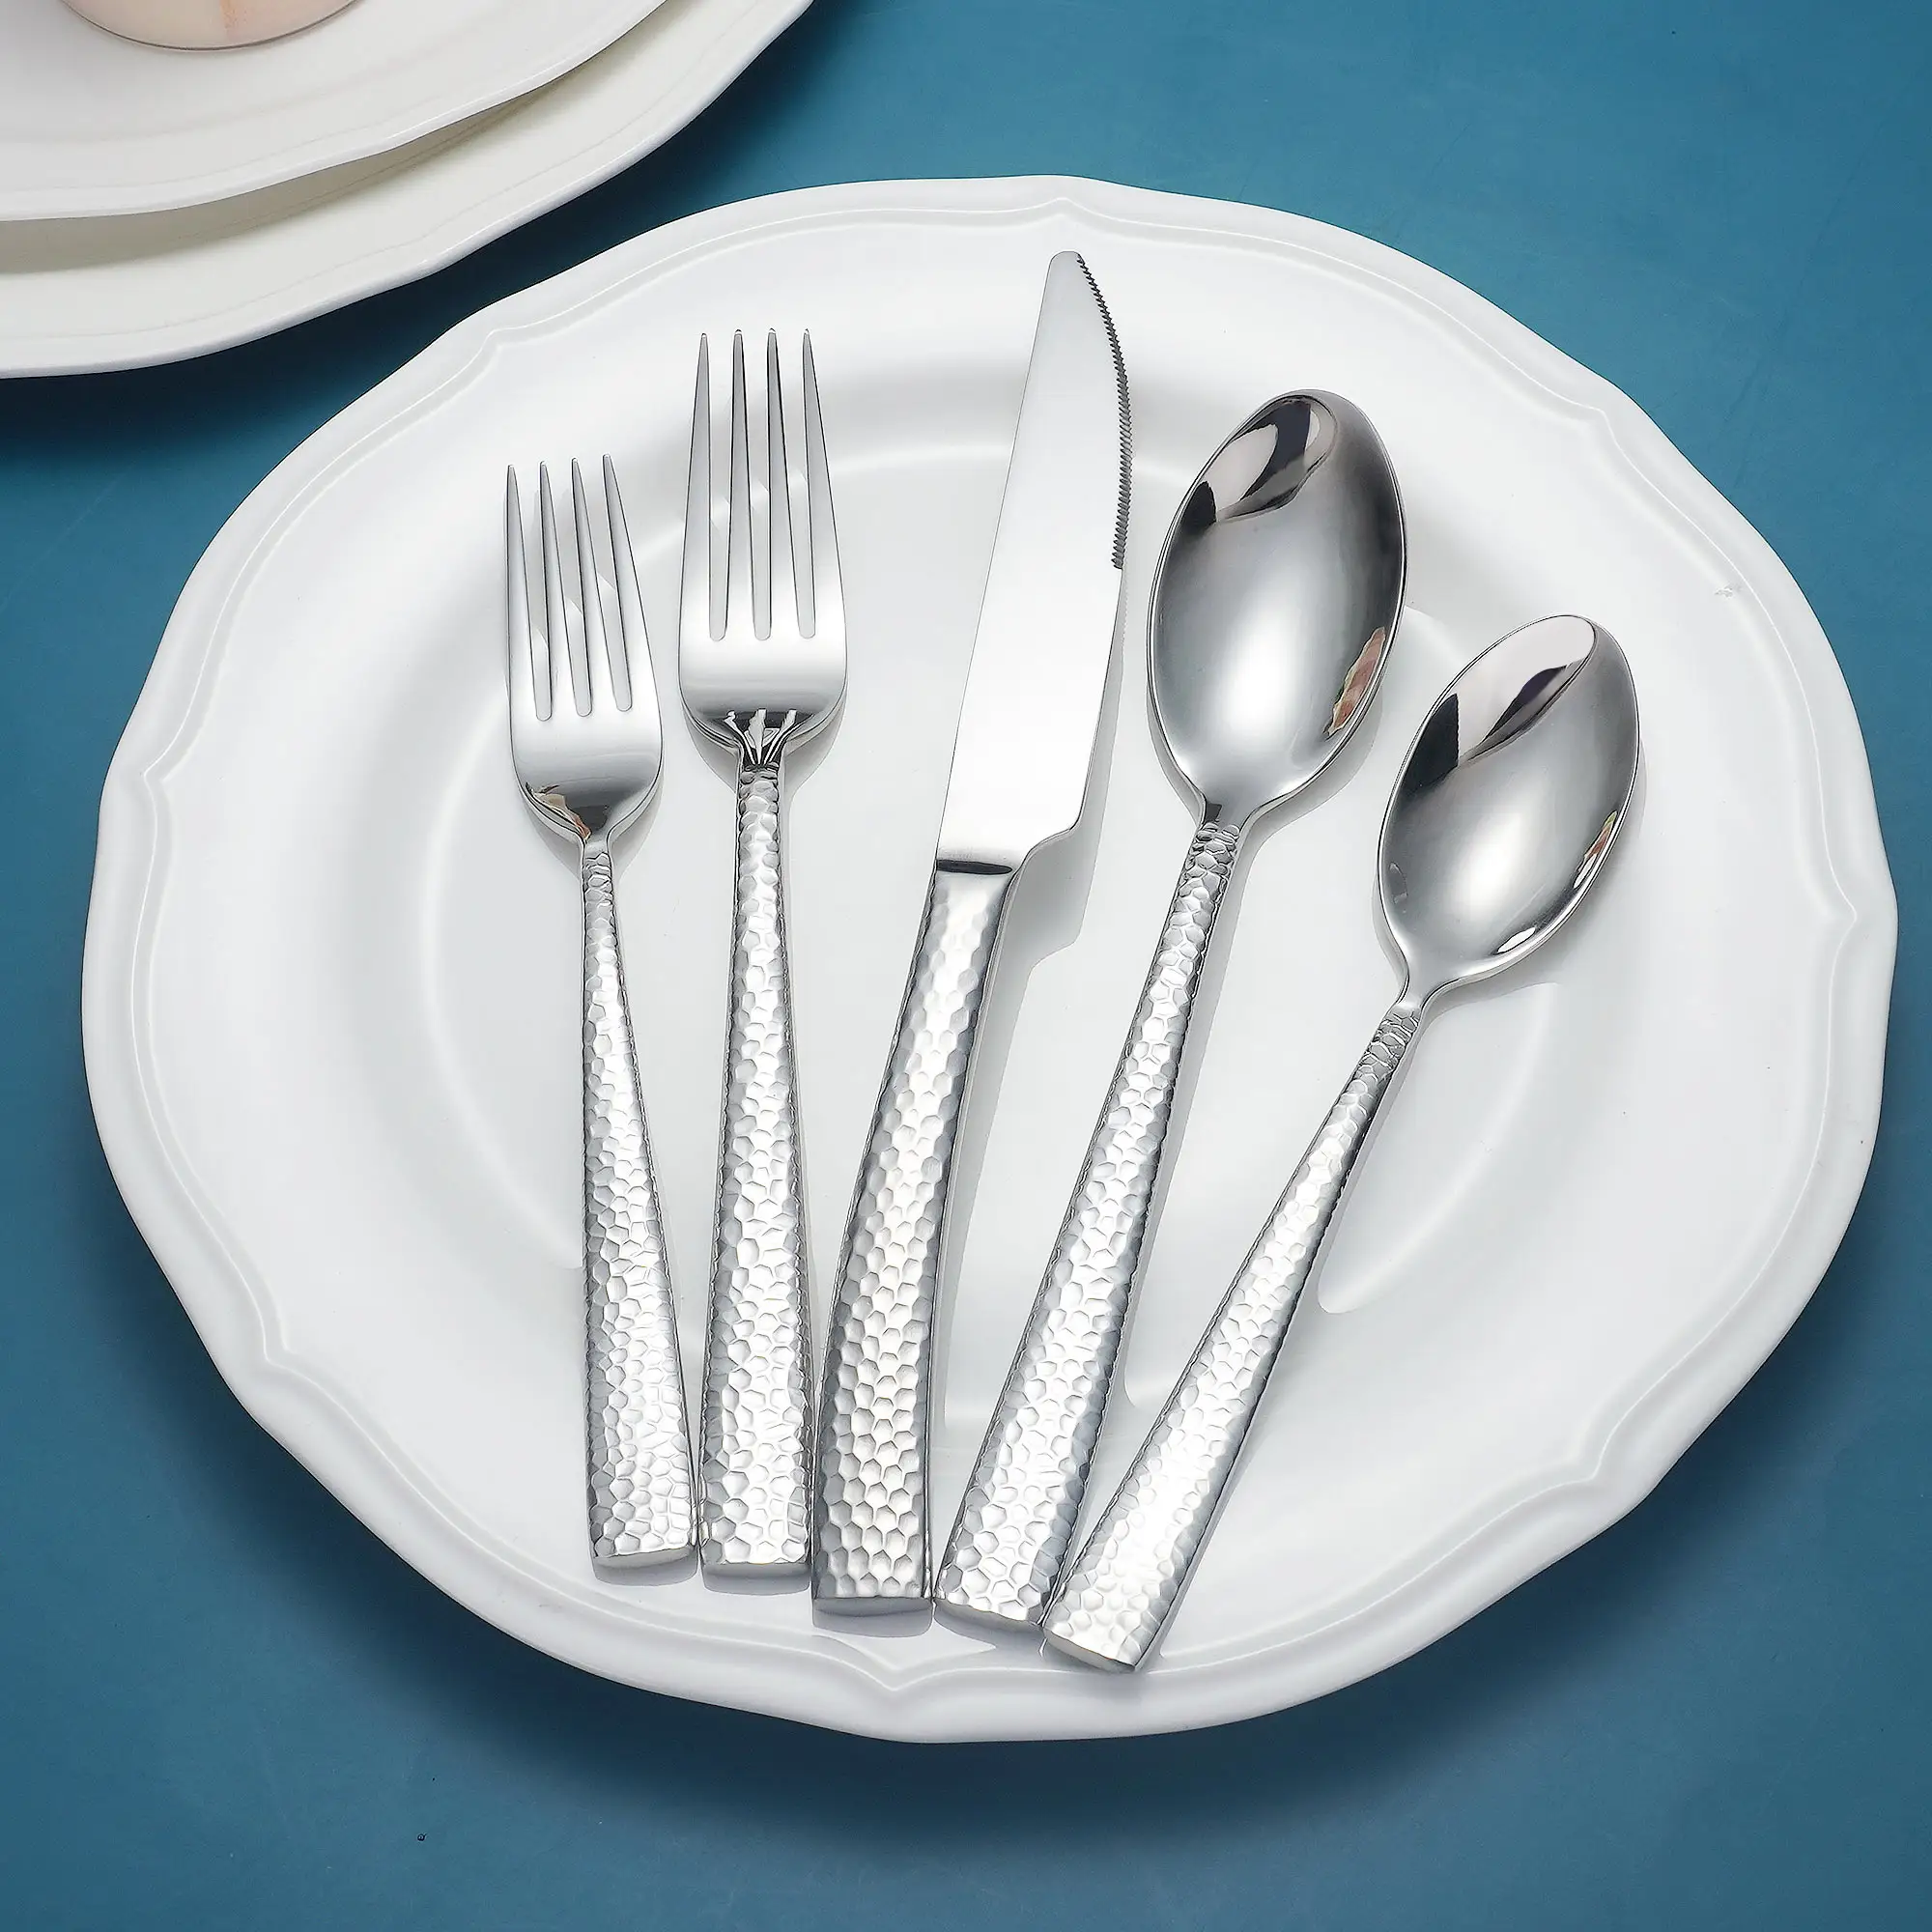 Kualitas tinggi Premium 18/10 baja tahan karat pisau tempa sendok dan garpu peralatan makan perak Set alat makan